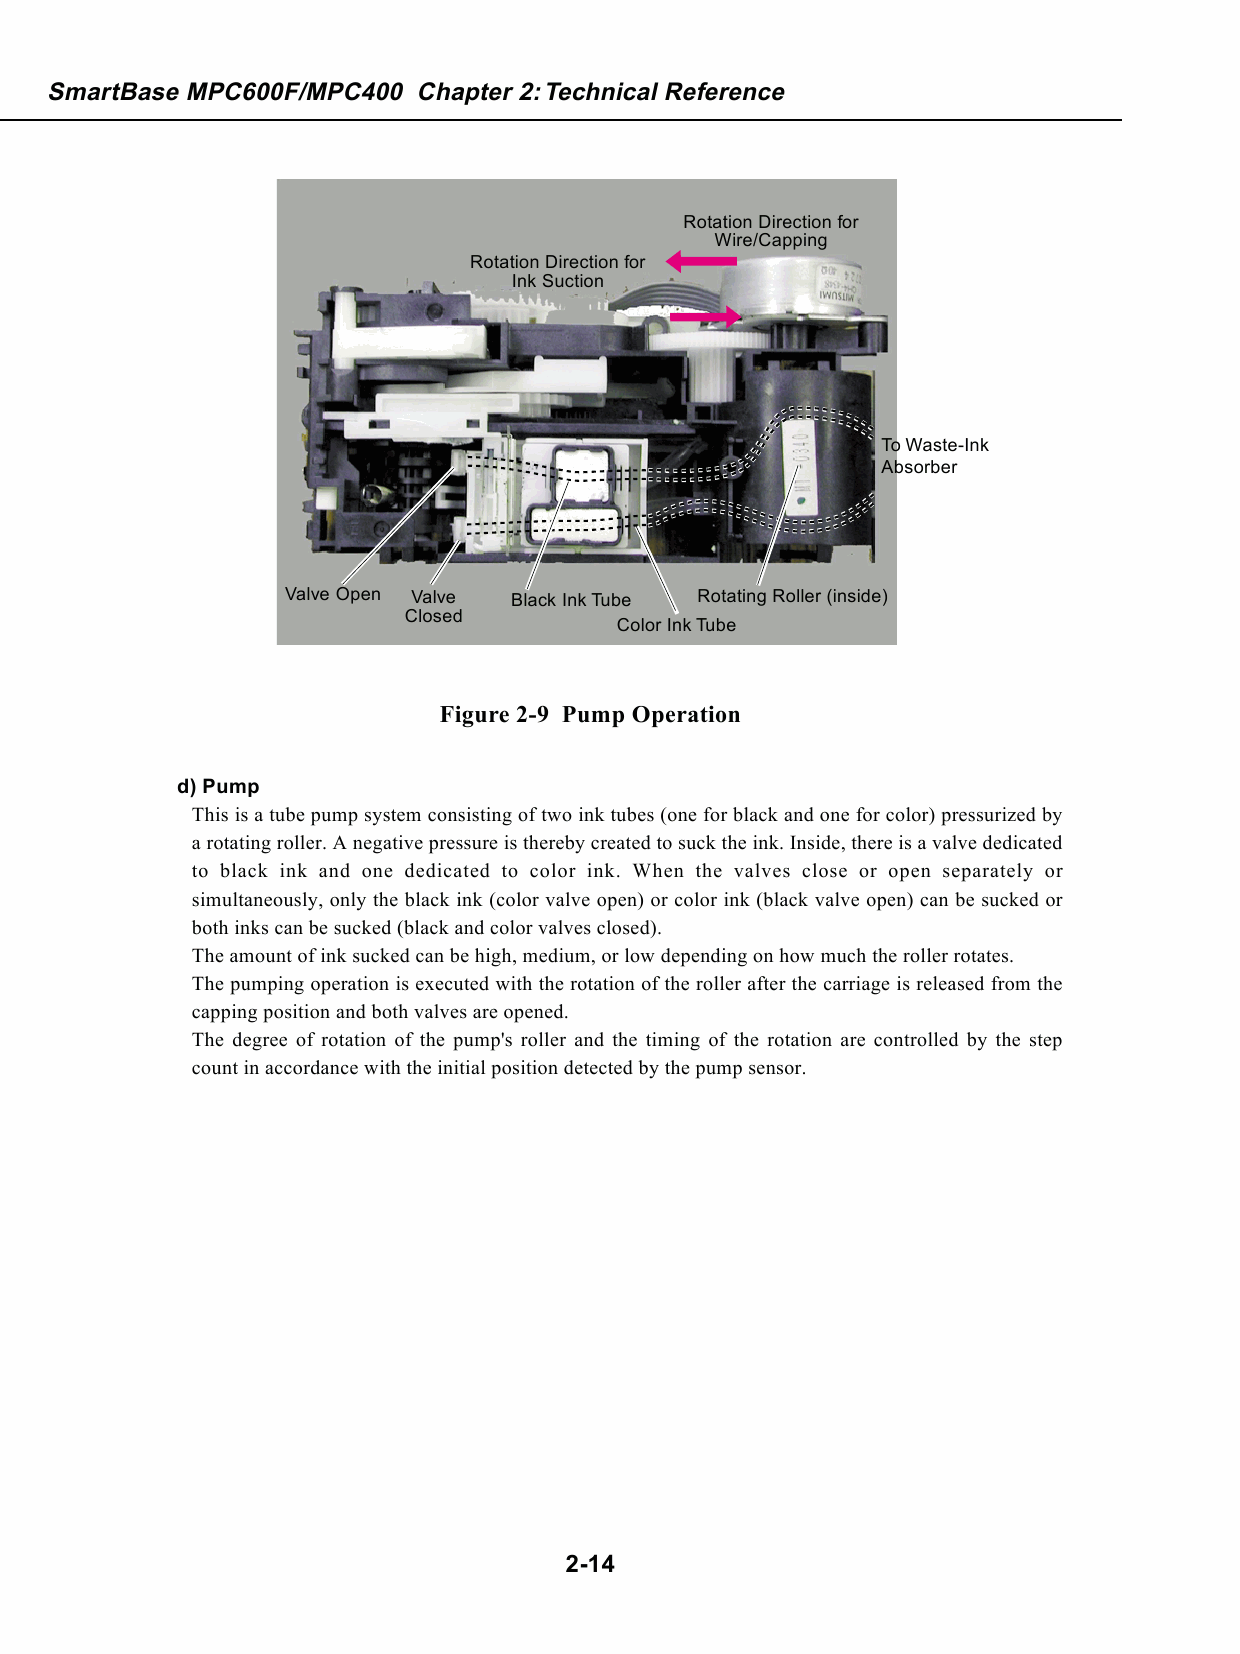 Canon SmartBase MPC600F MPC400 Service Manual-3